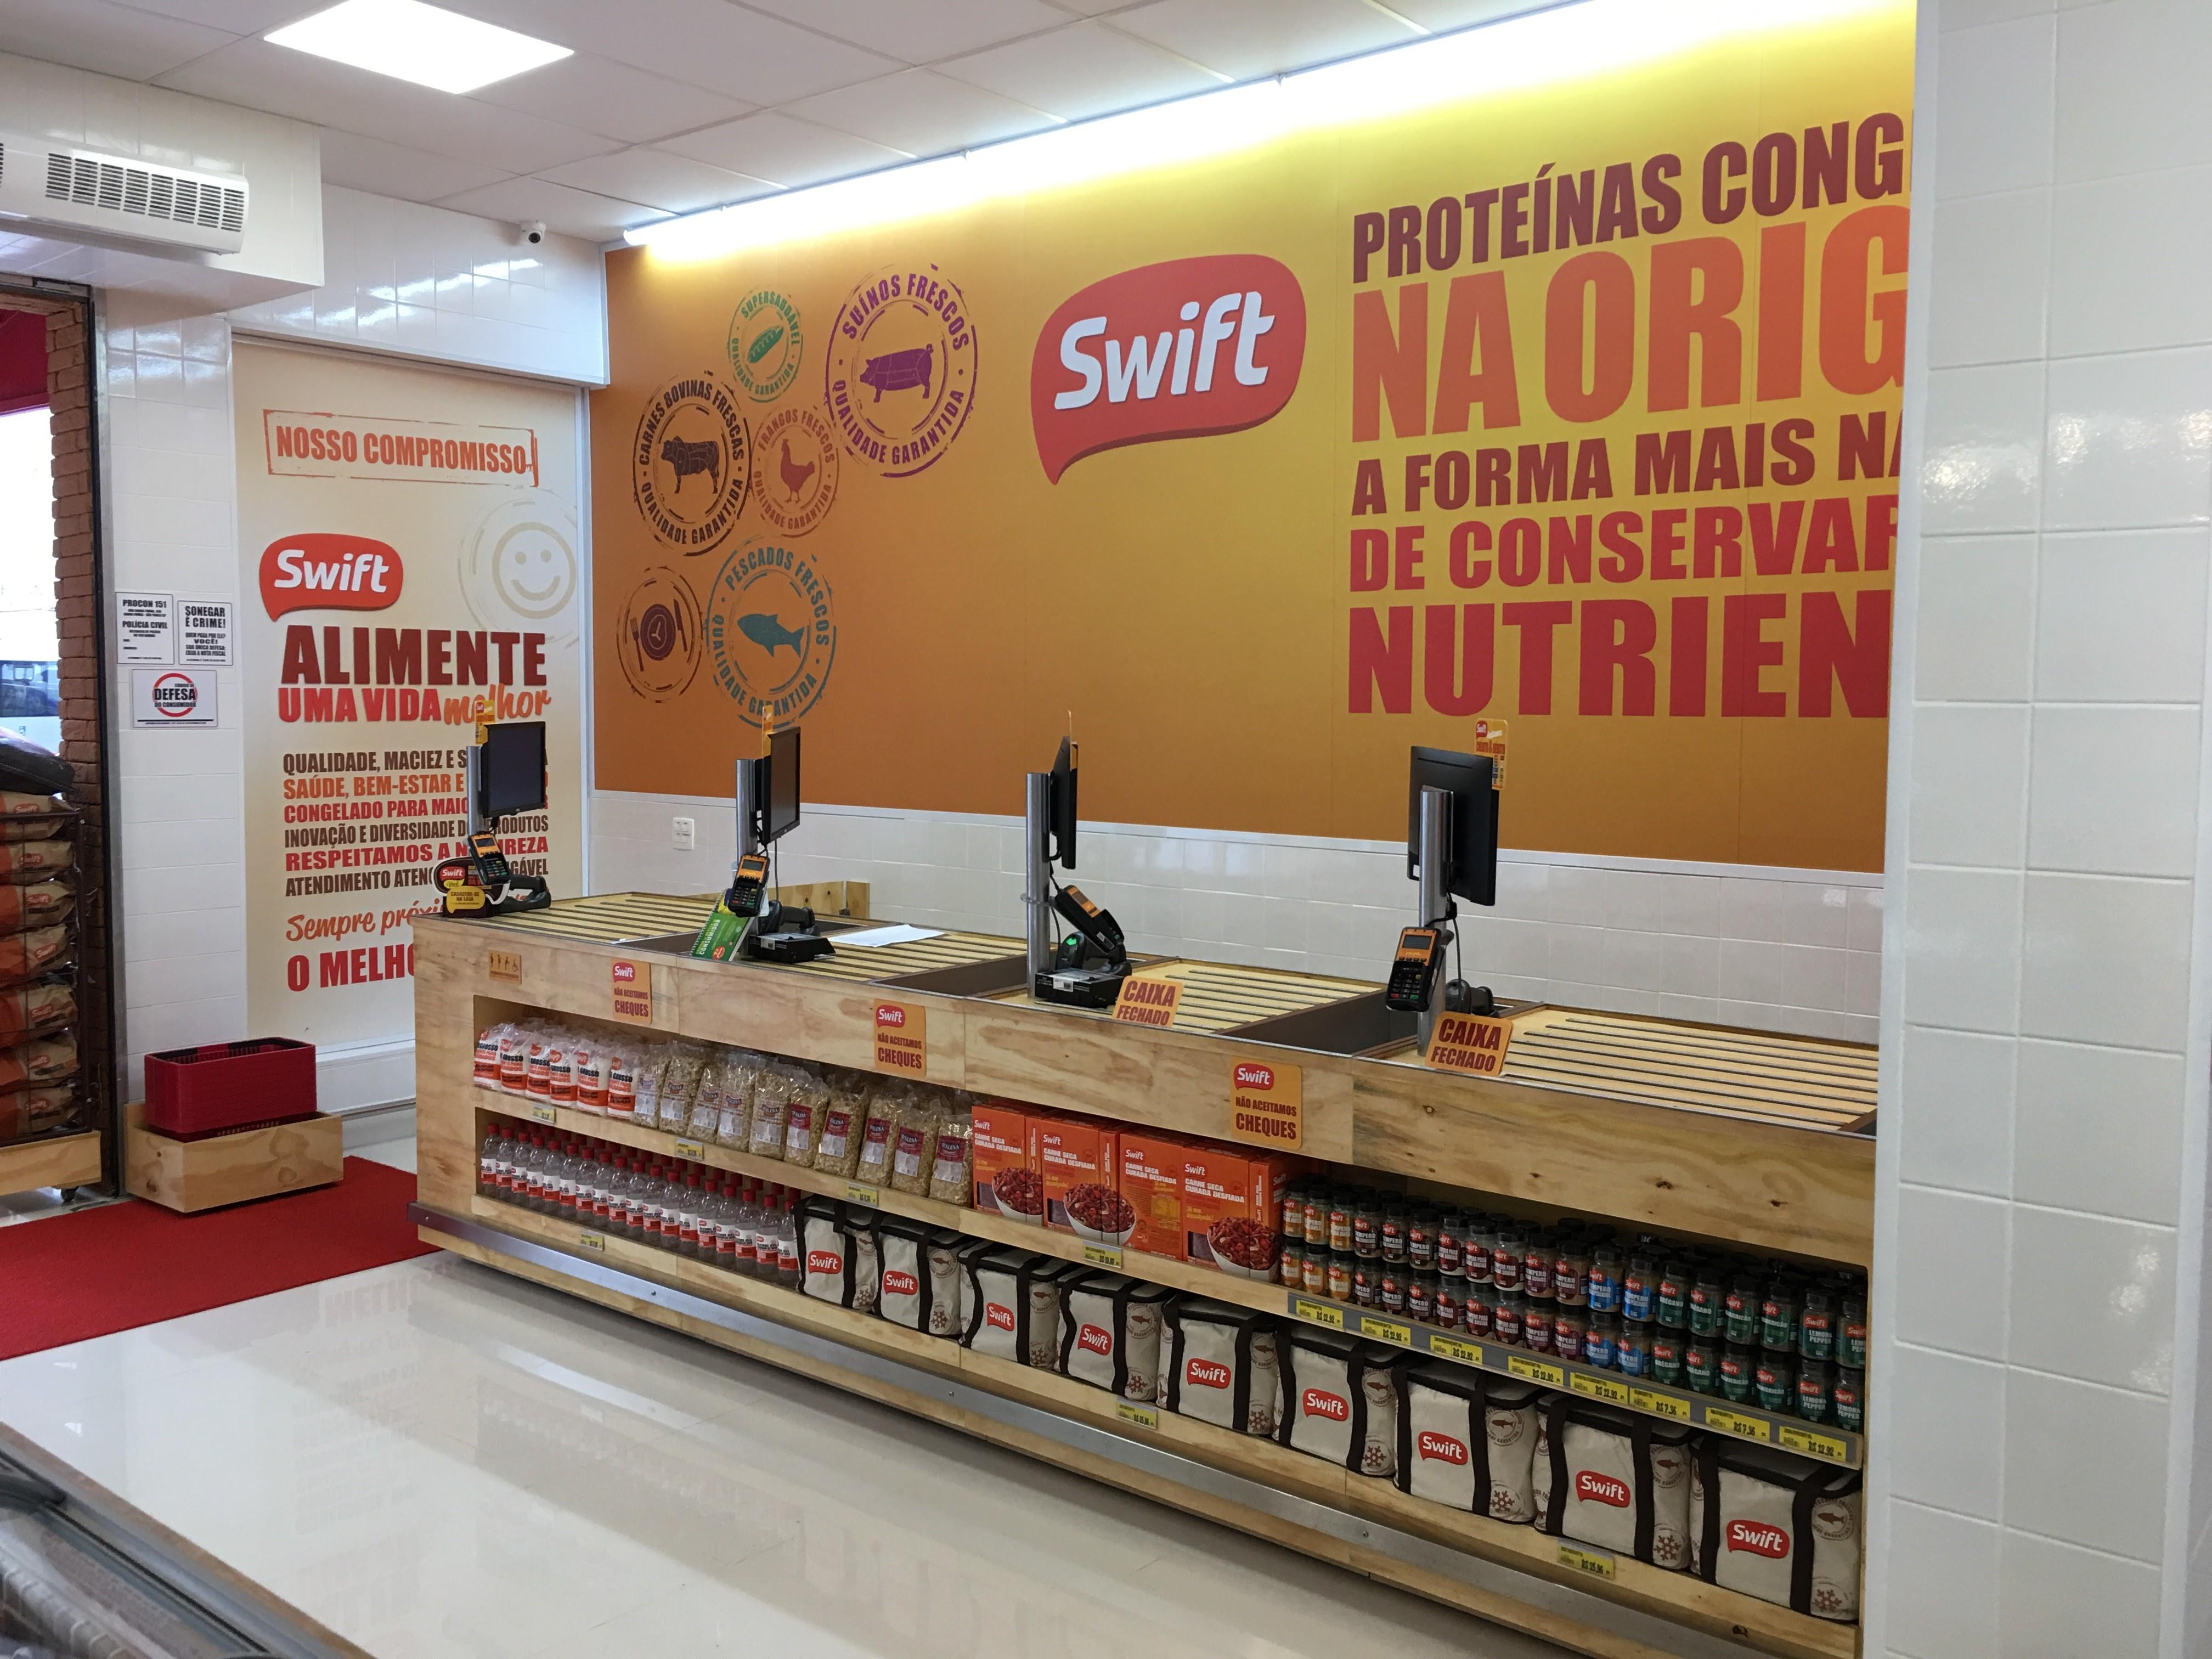 Swift Mercado da Carne Vila Andrade - Larocca Engenharia